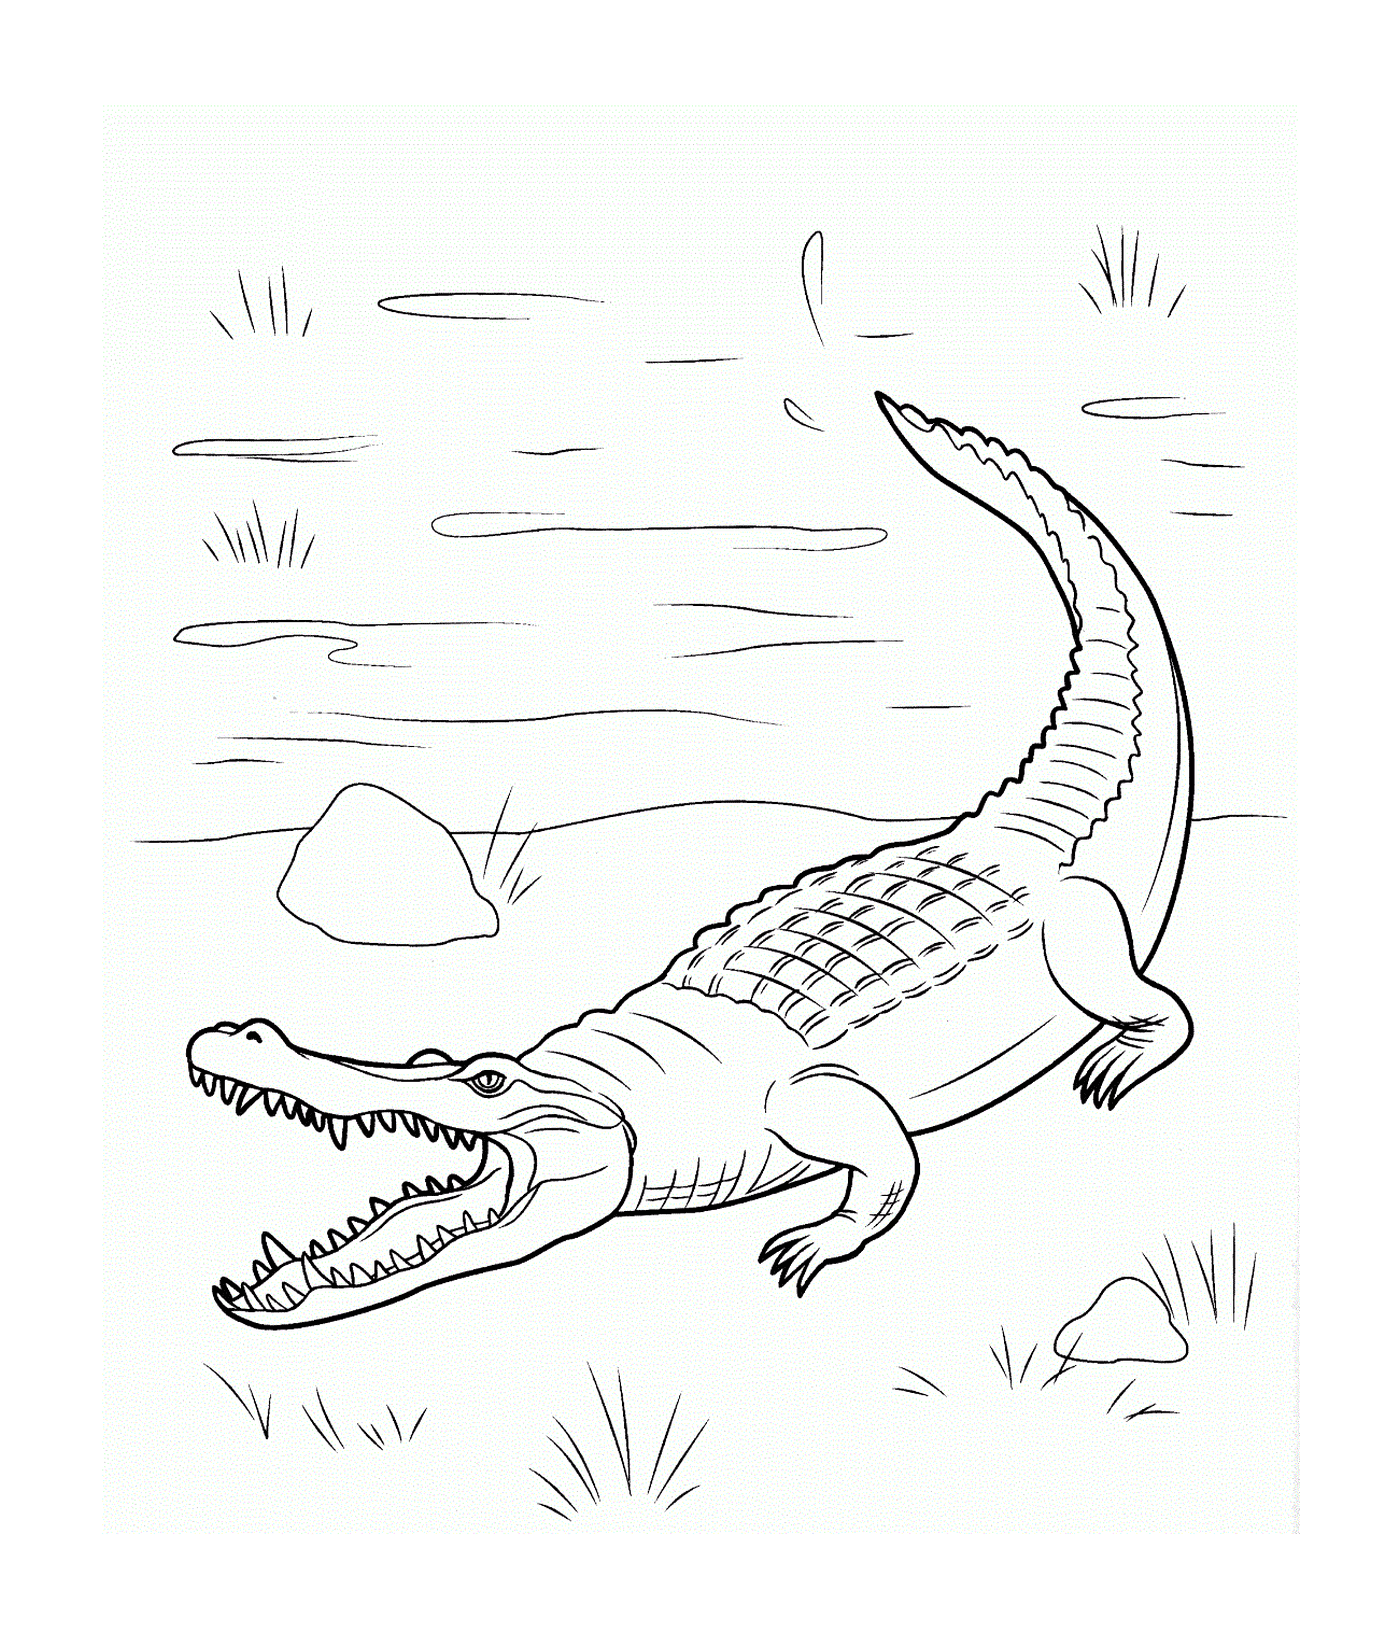   Un crocodile marin de la famille des Crocodylidae, nageant dans l'eau 